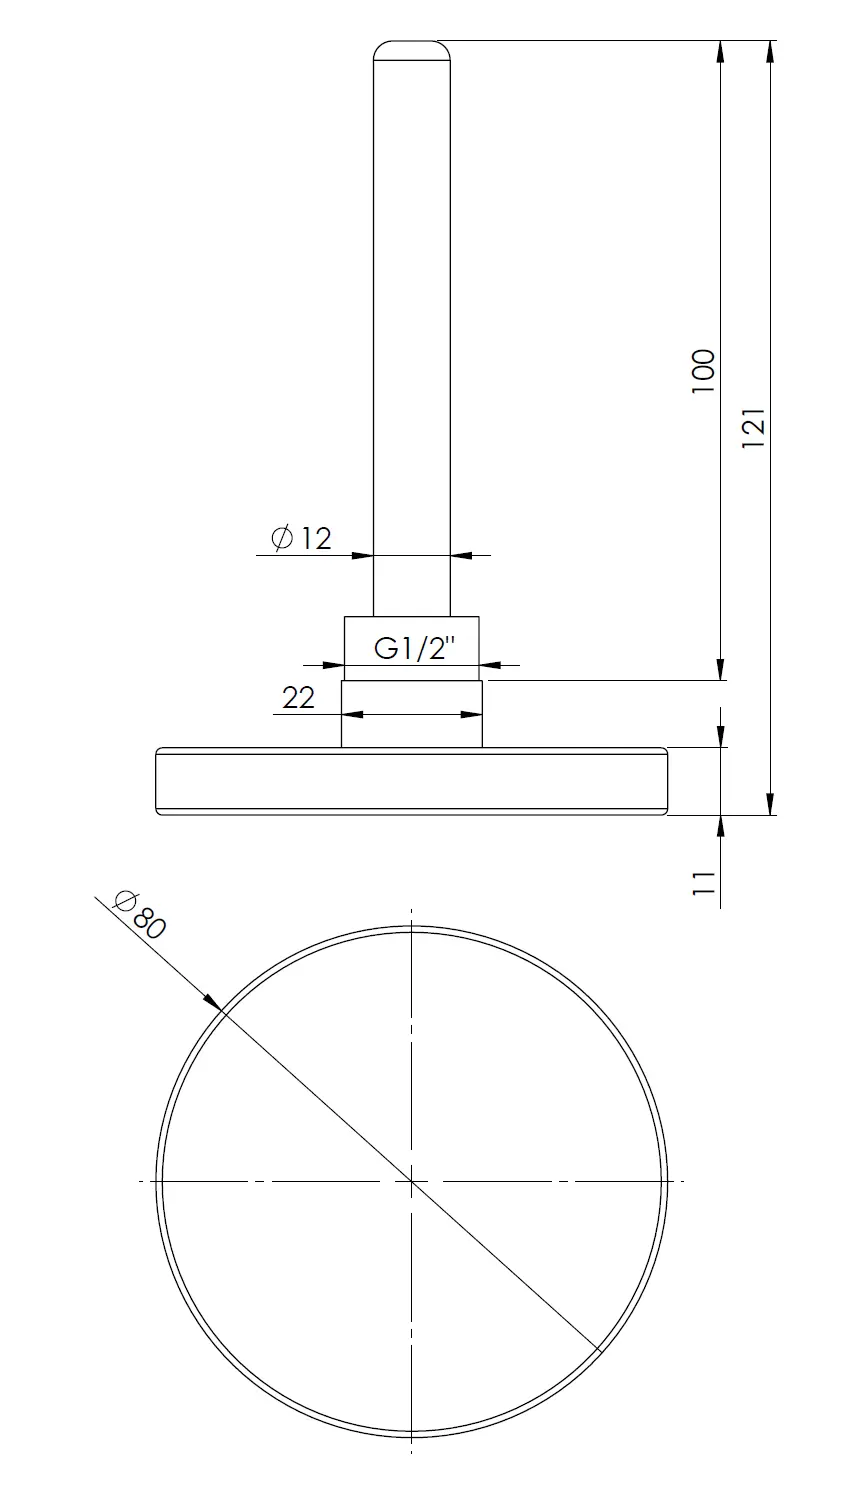 Termometr bimetaliczny BiTh 63, fi63 mm, 0÷160°C, L 100 mm, G1/2", ax, kl. 2 - budowa